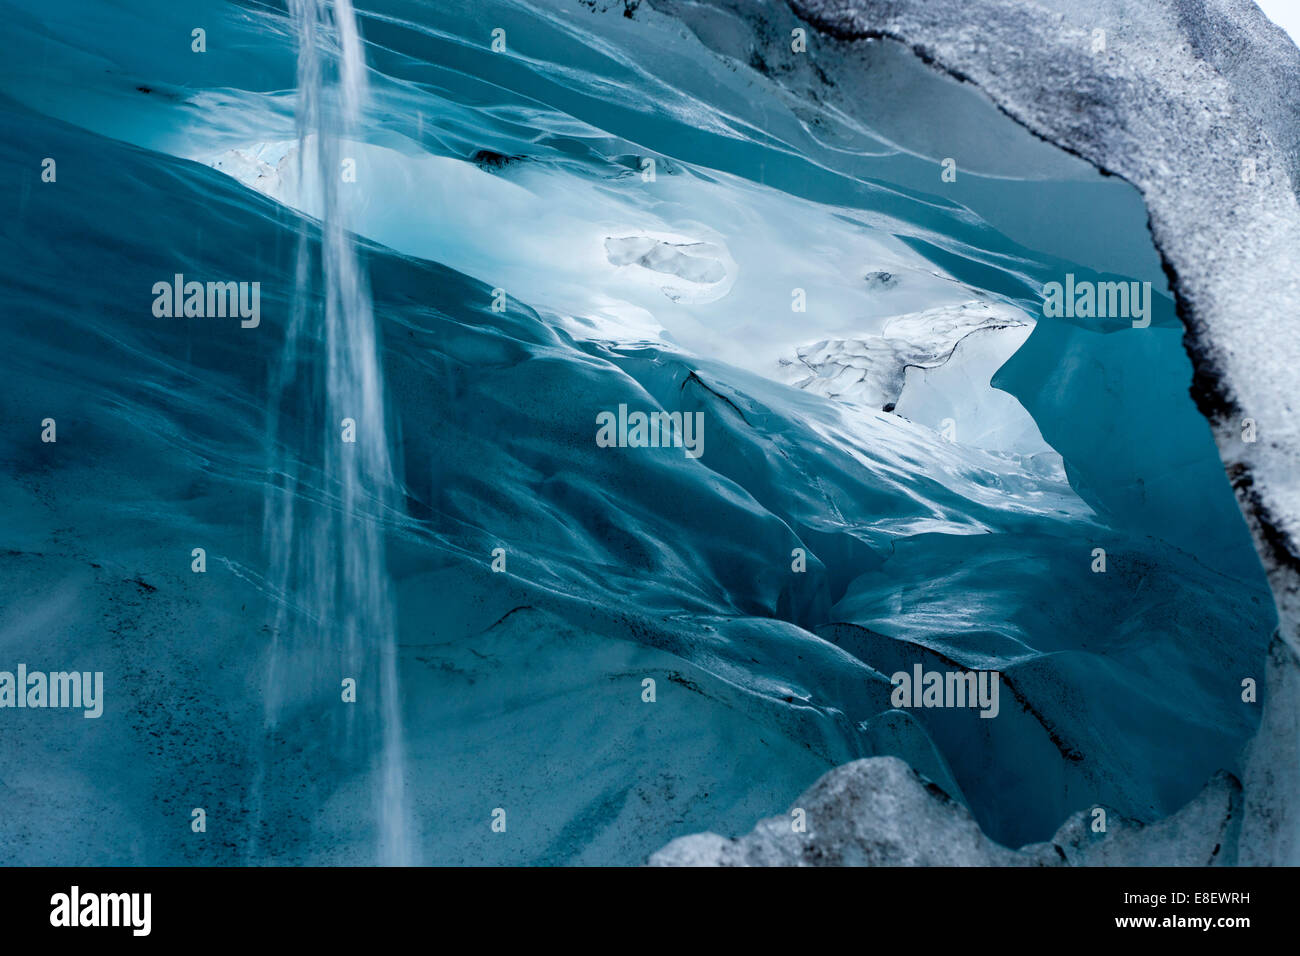 Afficher dans une grotte de glace bleu-vert avec évacuation de l'eau de condensation, Glacier Skaftafell, l'Islande Banque D'Images